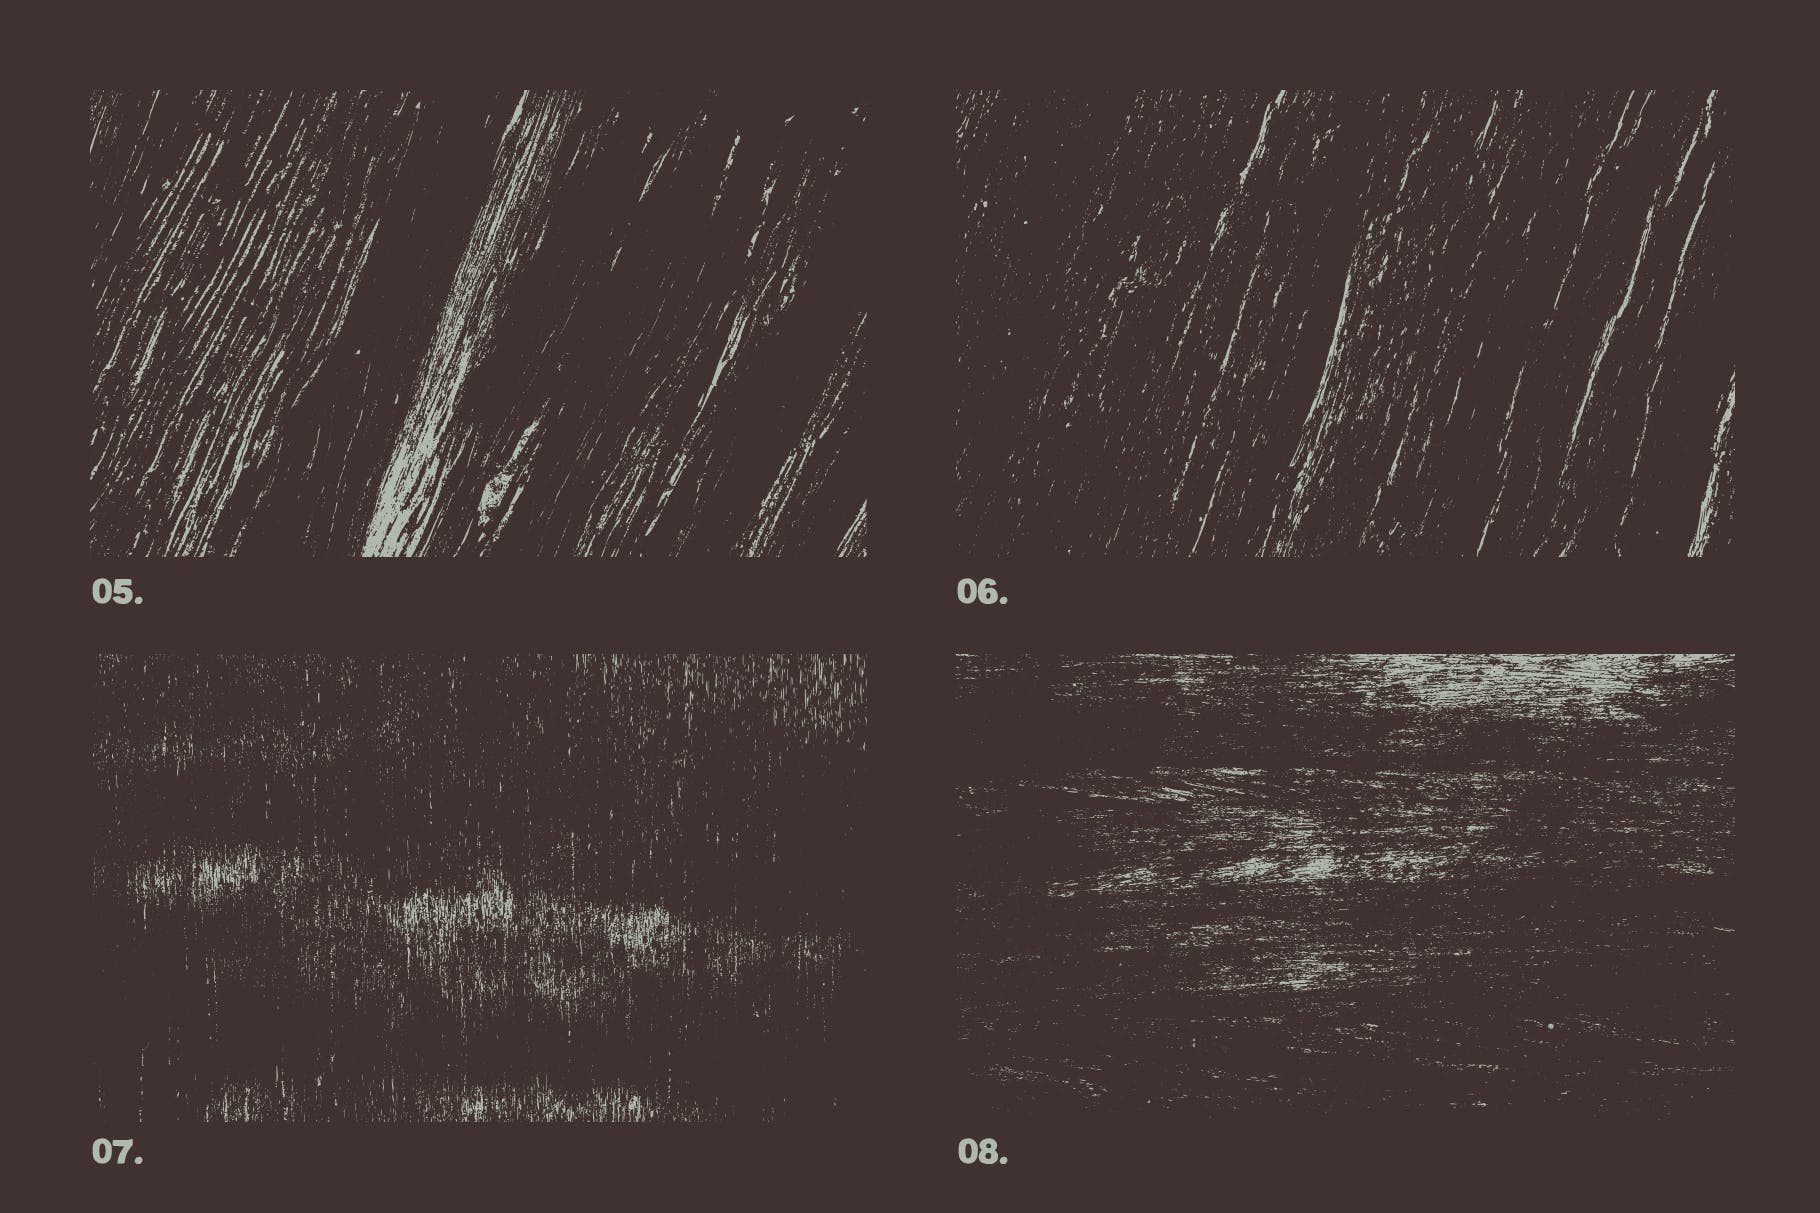 12个实木木纹矢量纹理背景素材 Vector Grunge Wood Textures x12插图2